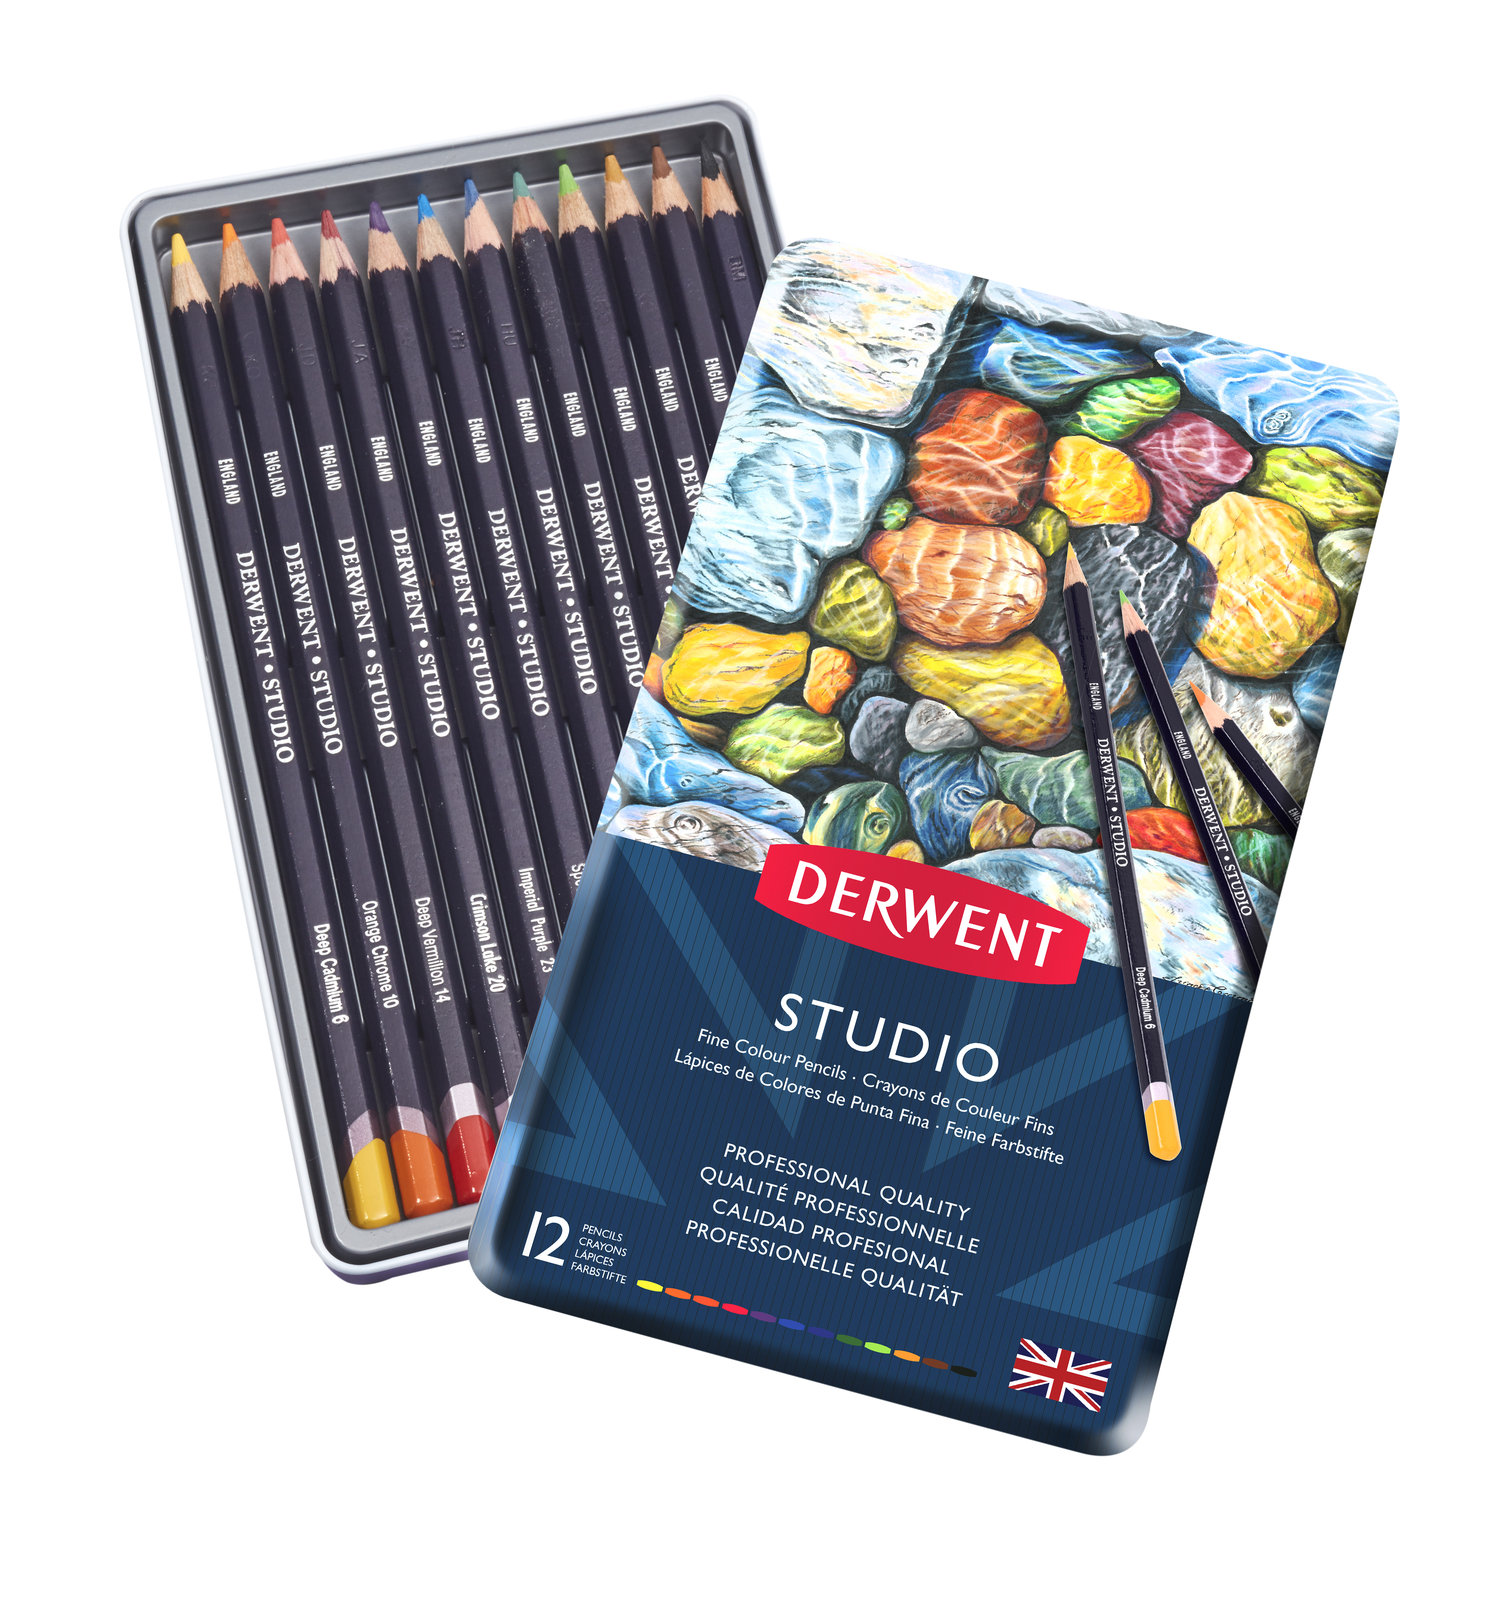 DERWENT Studio 12 英国进口得韵 12色画室彩铅铁盒套装 专业绘画必备 非常适合细节描绘和结构绘画